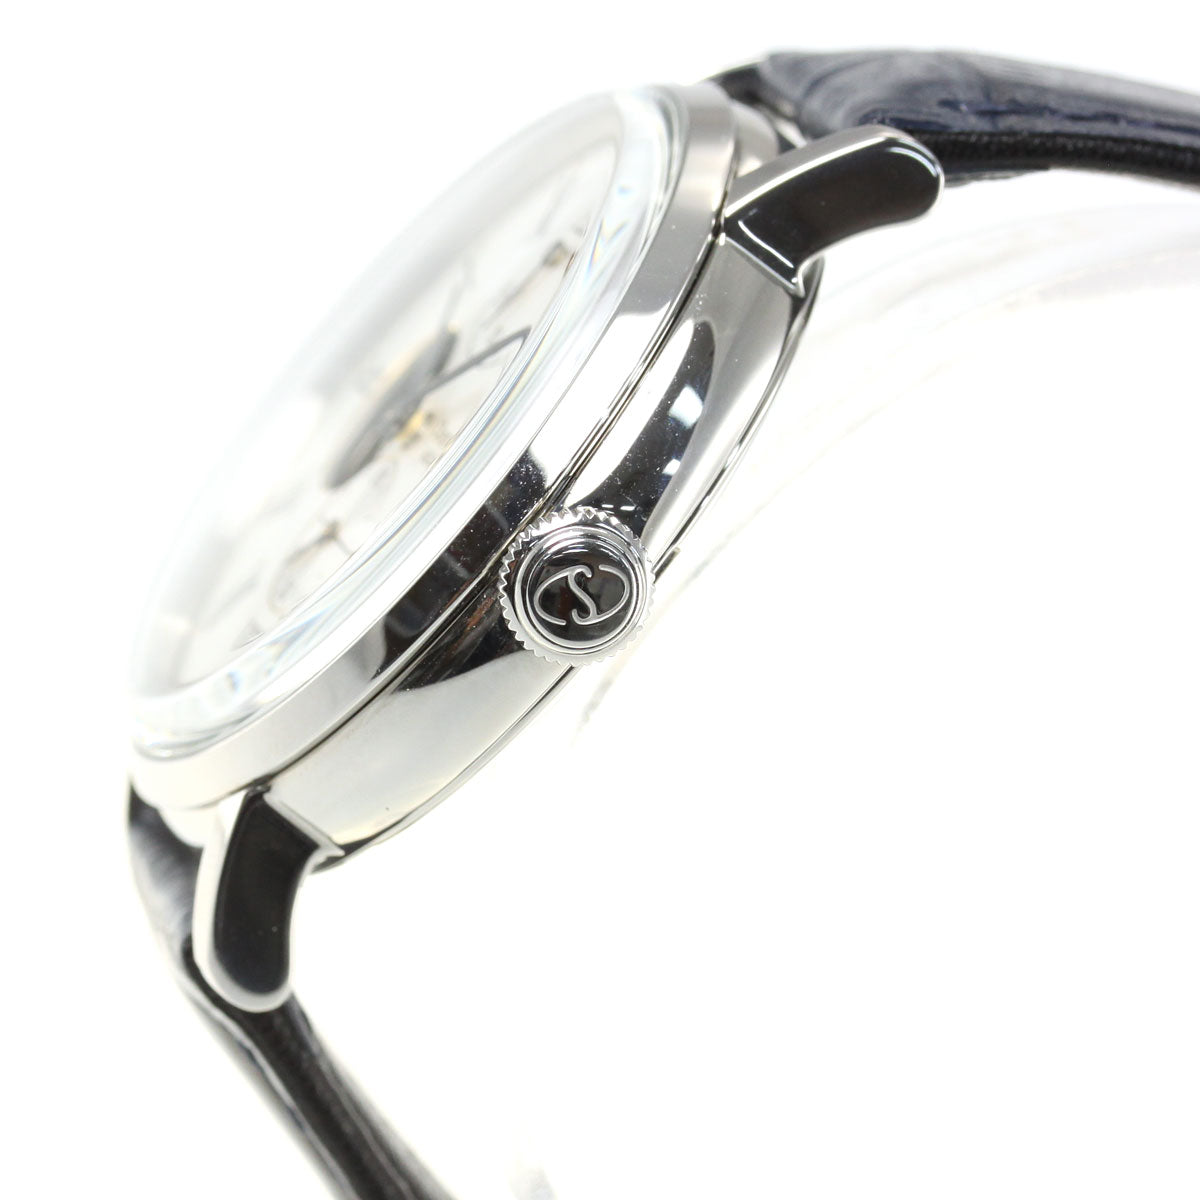 オリエントスター ORIENT STAR 腕時計 メンズ 自動巻き 機械式 クラシック CLASSIC クラシックセミスケルトン RK-AV0003S